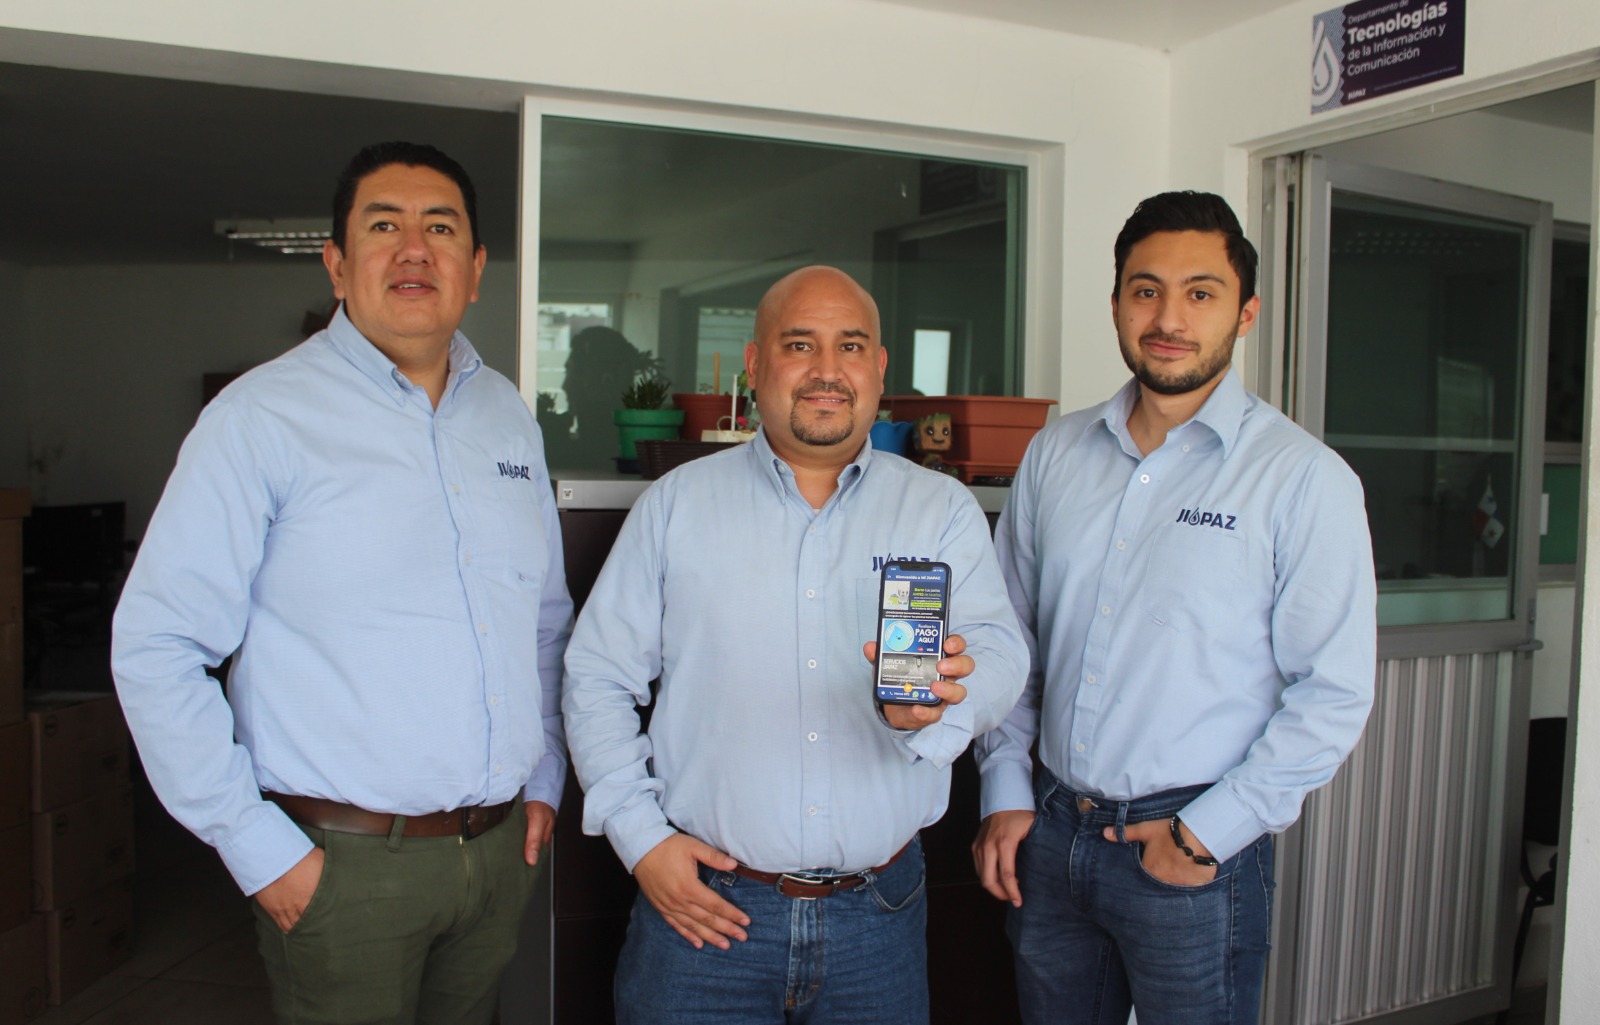 Apple valida aplicación Mi JIAPAZ, ya disponible para iPhone y iPad – Gobierno del Estado de Zacatecas